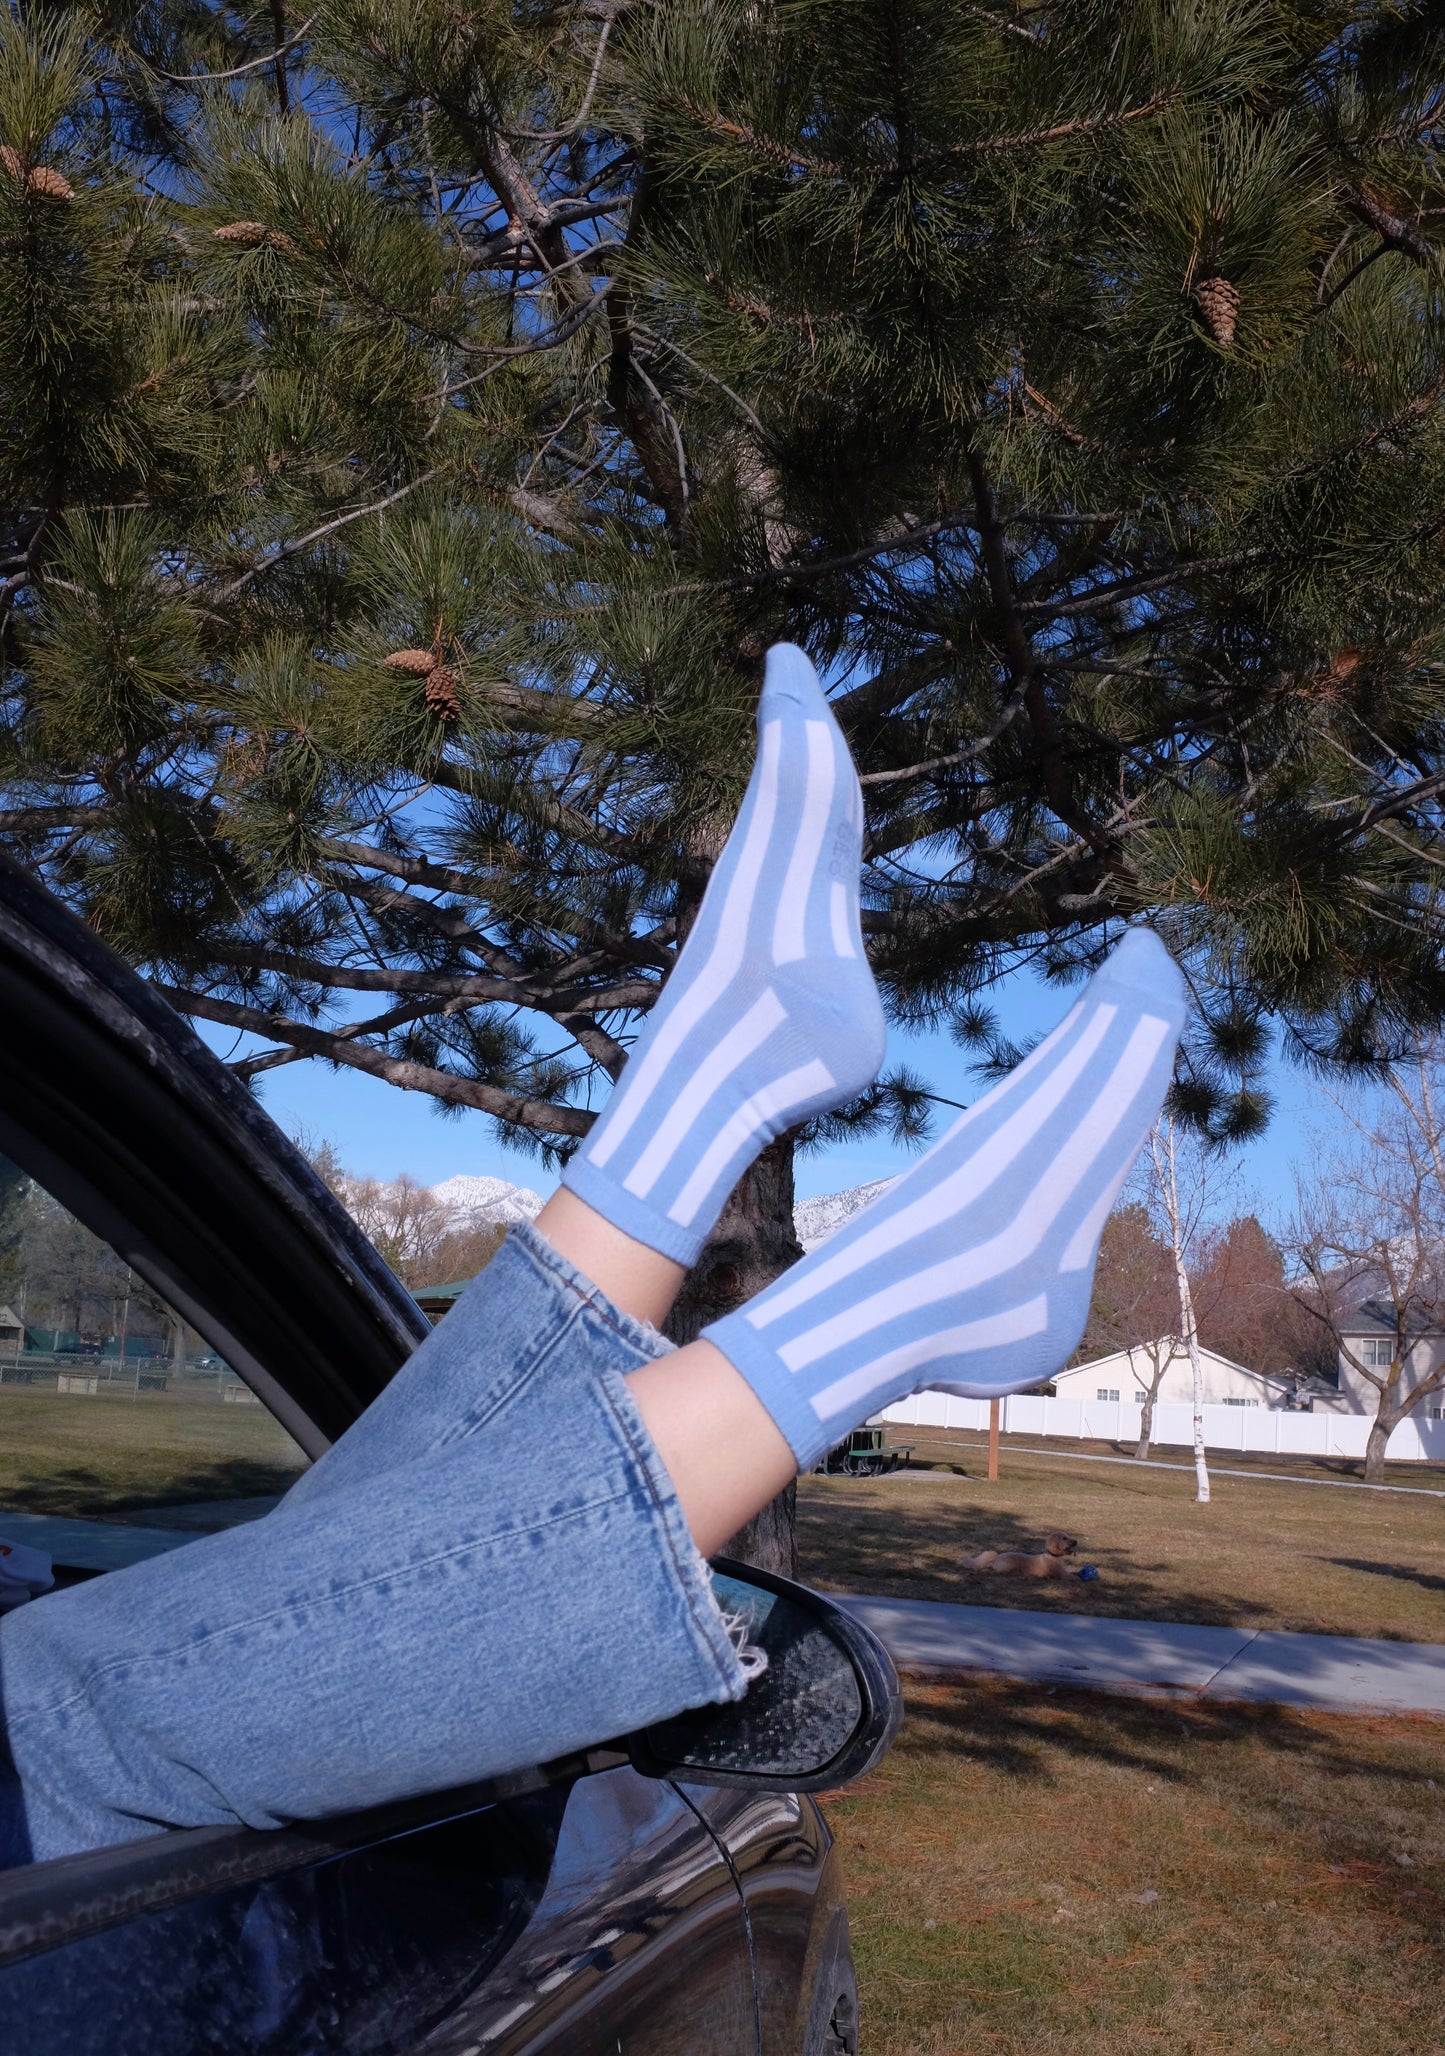 The Blue Waldo’s - Socks